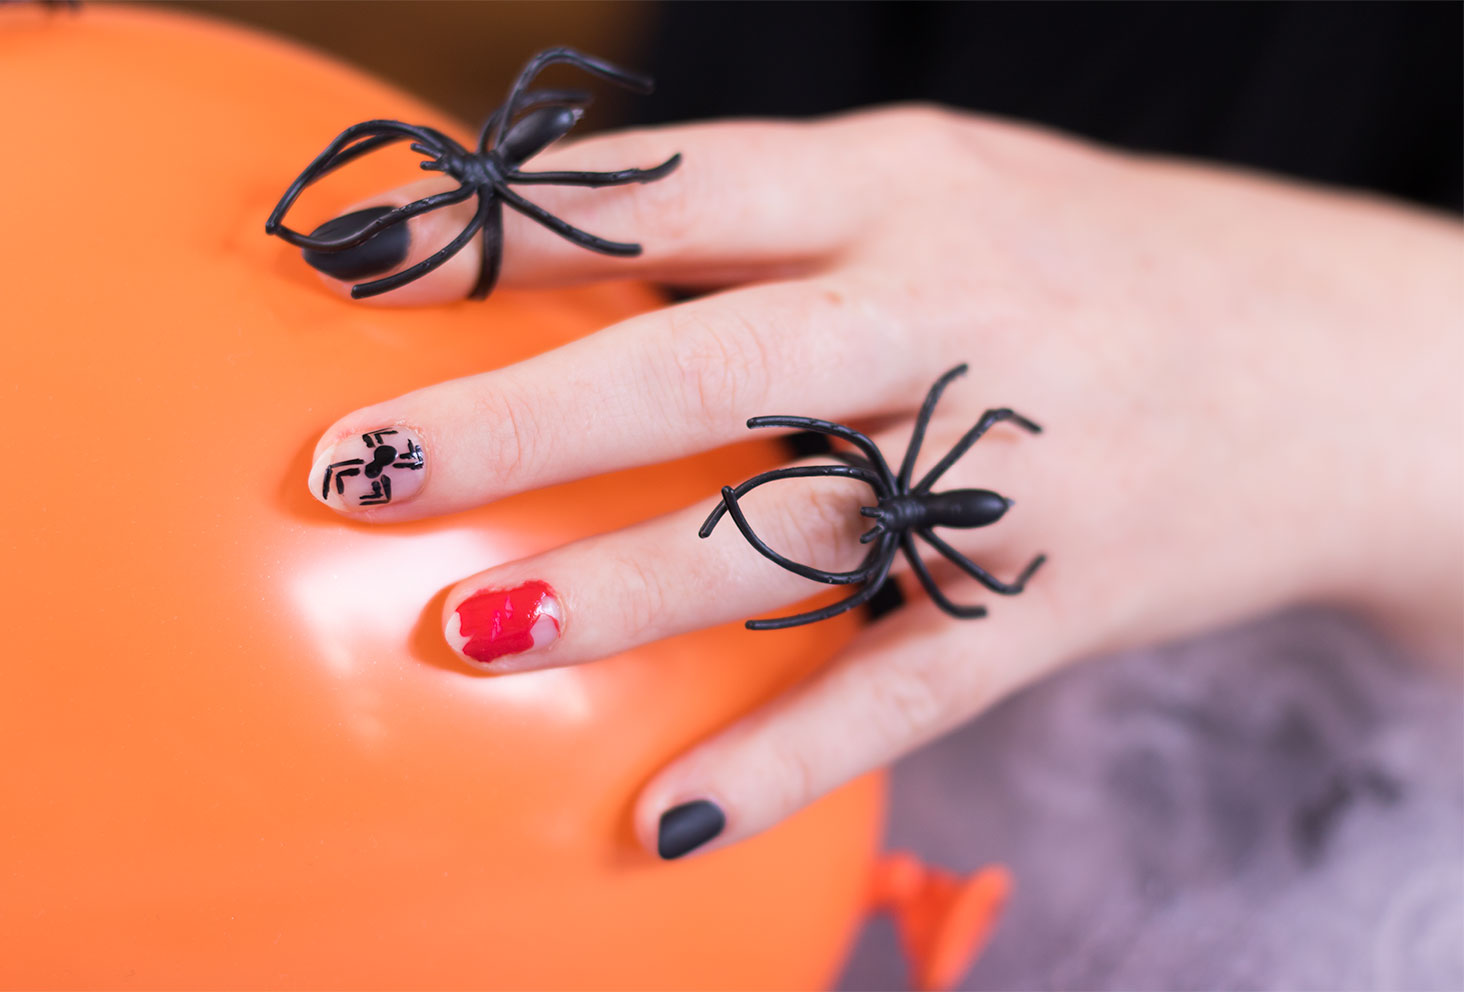 Résultat du nailart de Halloween terminé avec les grosses araignées sur les doigts